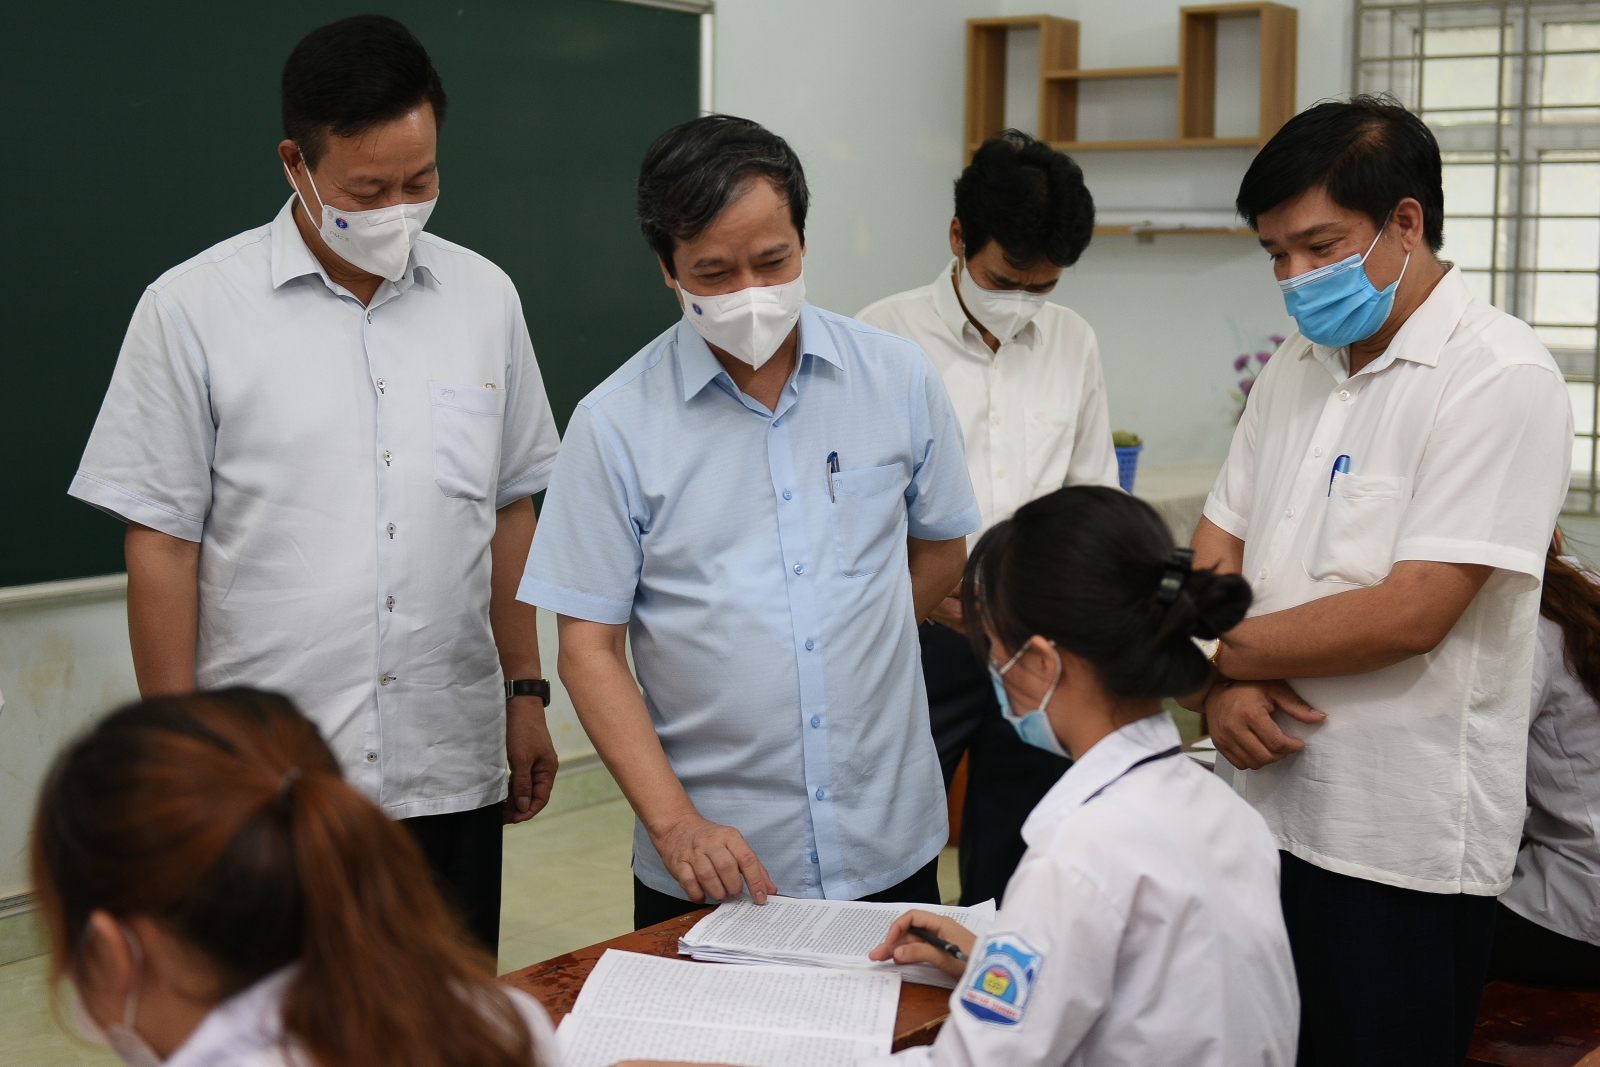 Bộ trưởng Nguyễn Kim Sơn: “Dù vào đại học hay không, mong các em tự tin để phát triển bản thân”